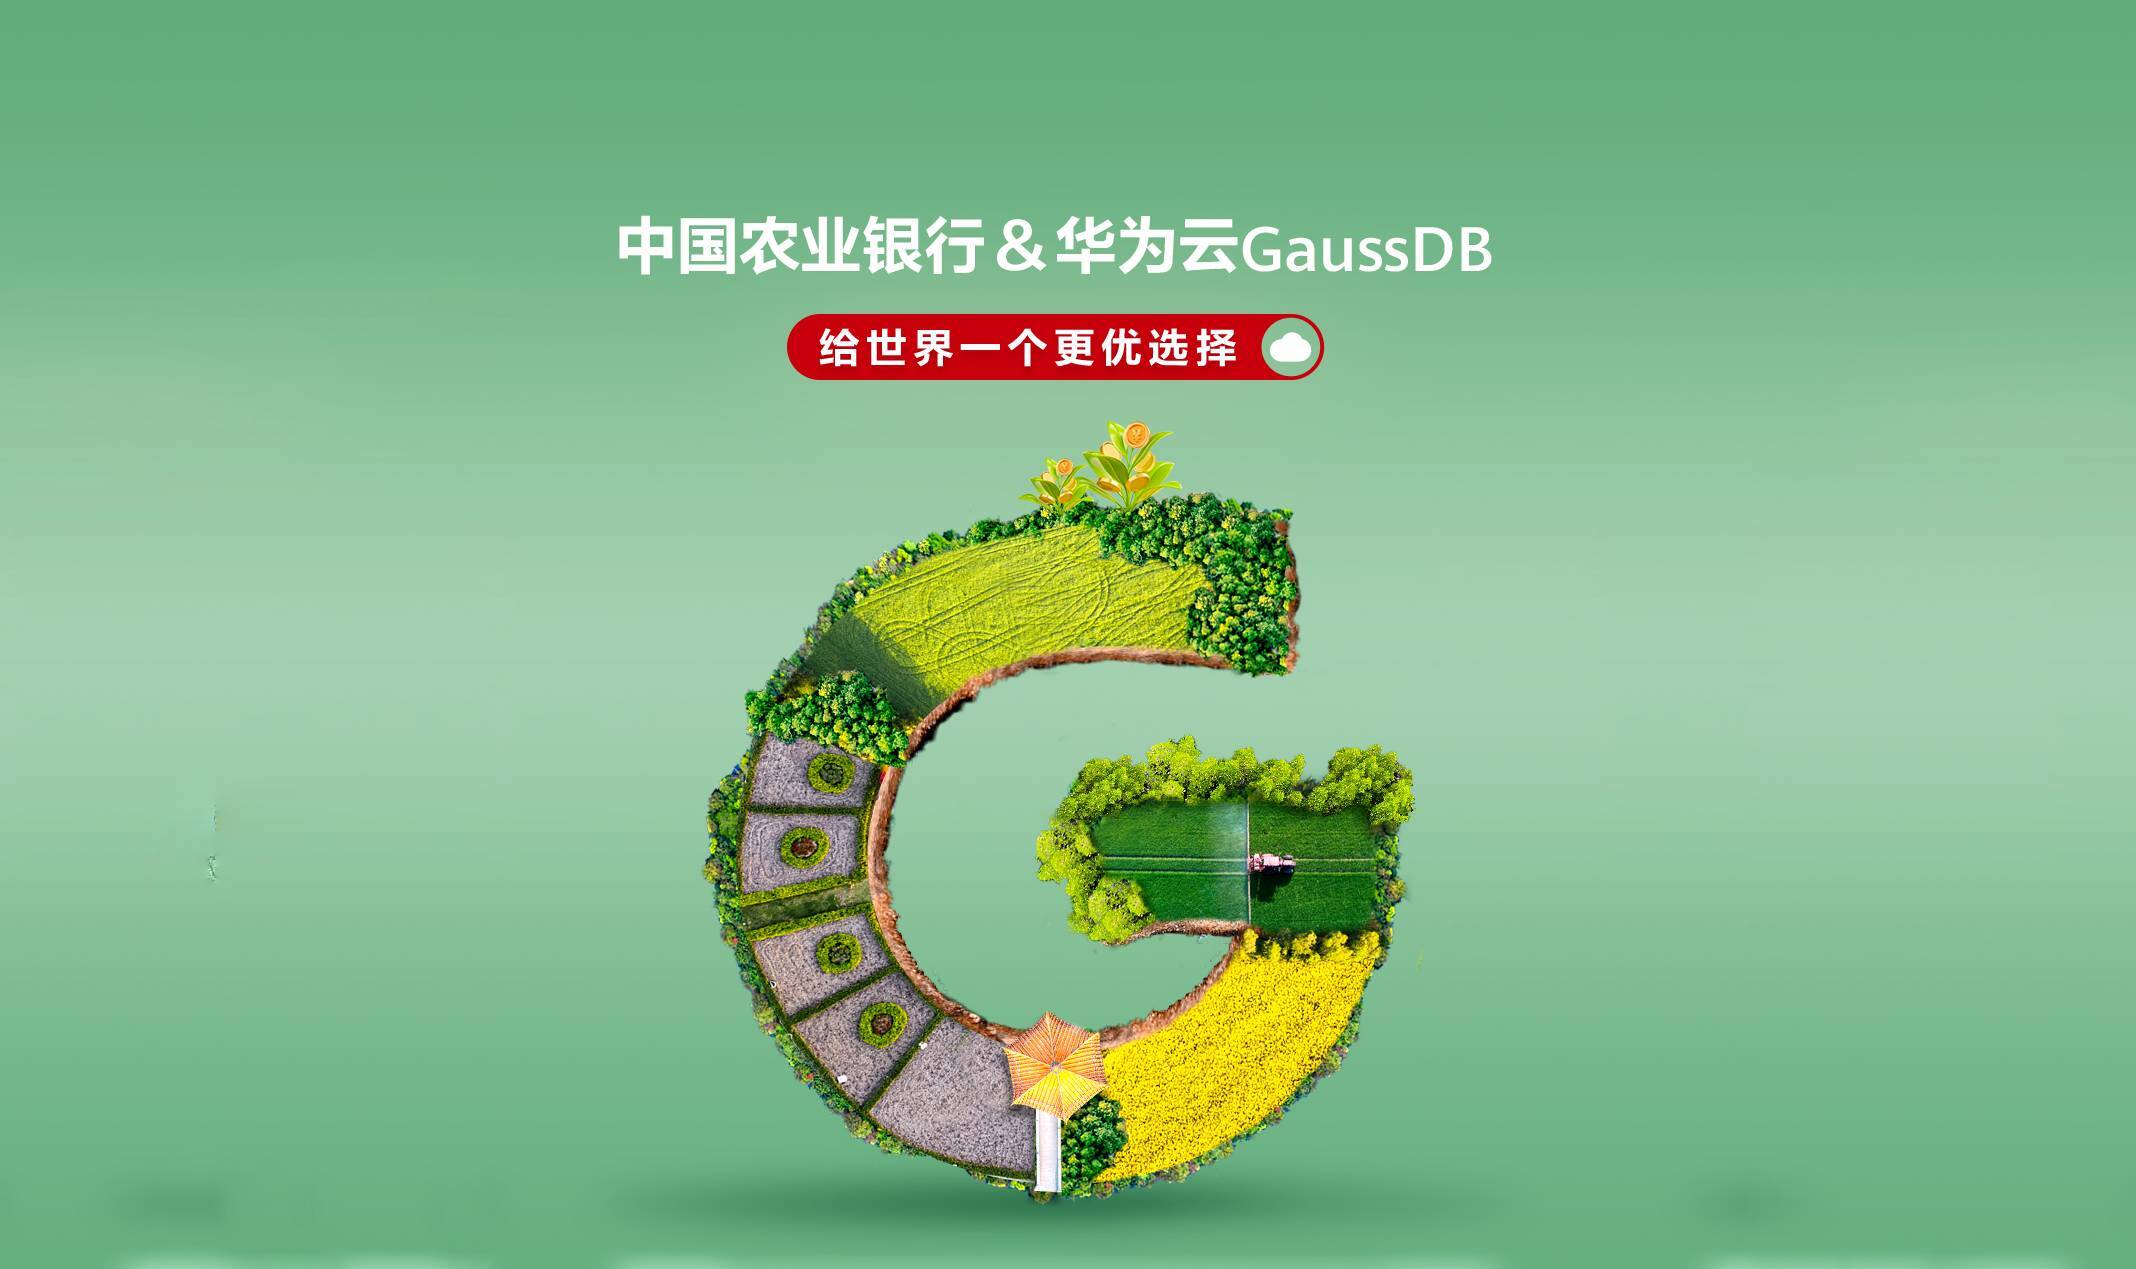 华为云GaussDB支撑农行超级网银业务，性能和稳定性备受认可